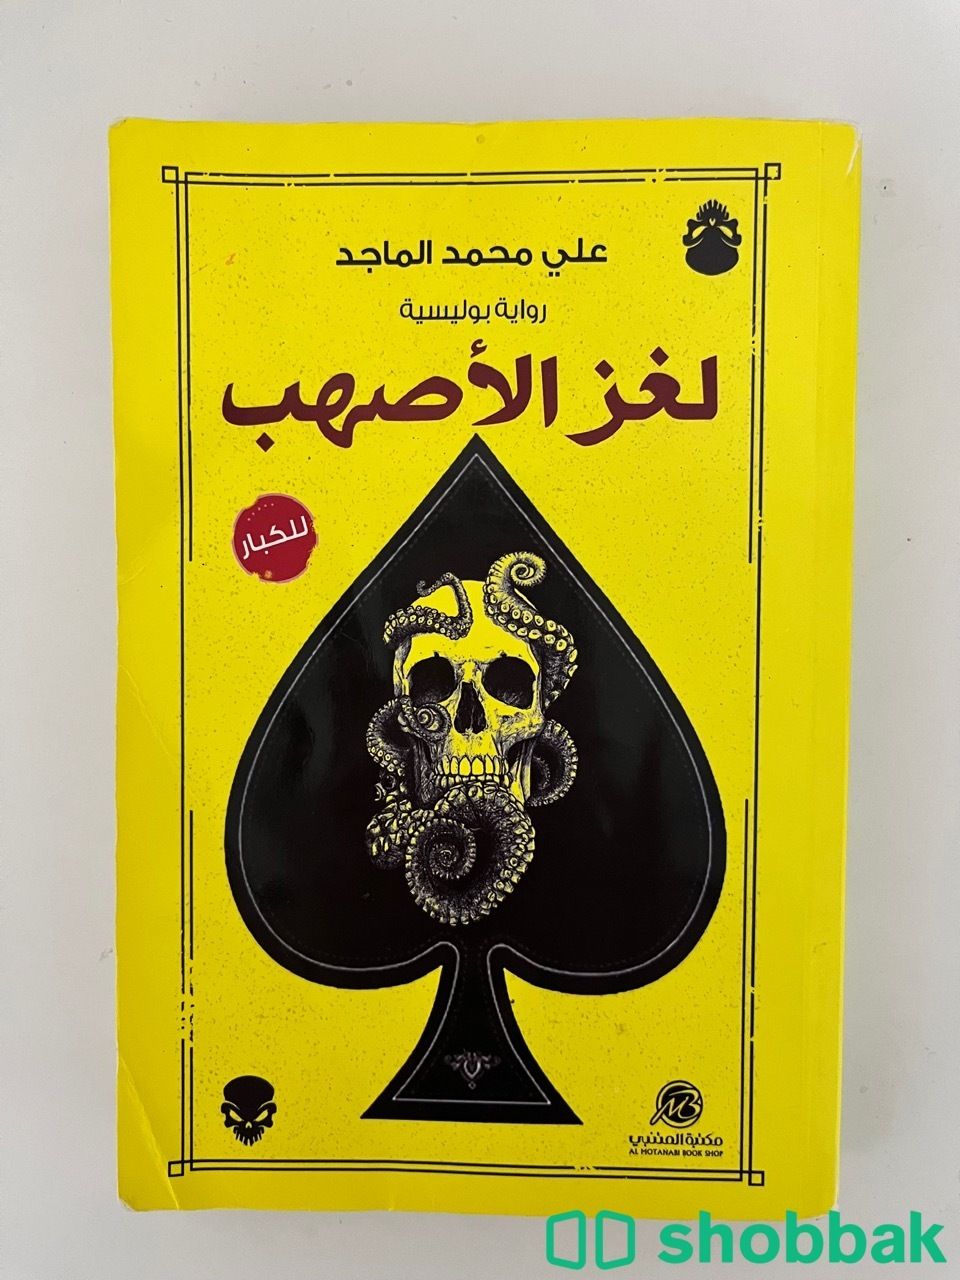 لغز الأصهب - علي محمد الماجد Shobbak Saudi Arabia